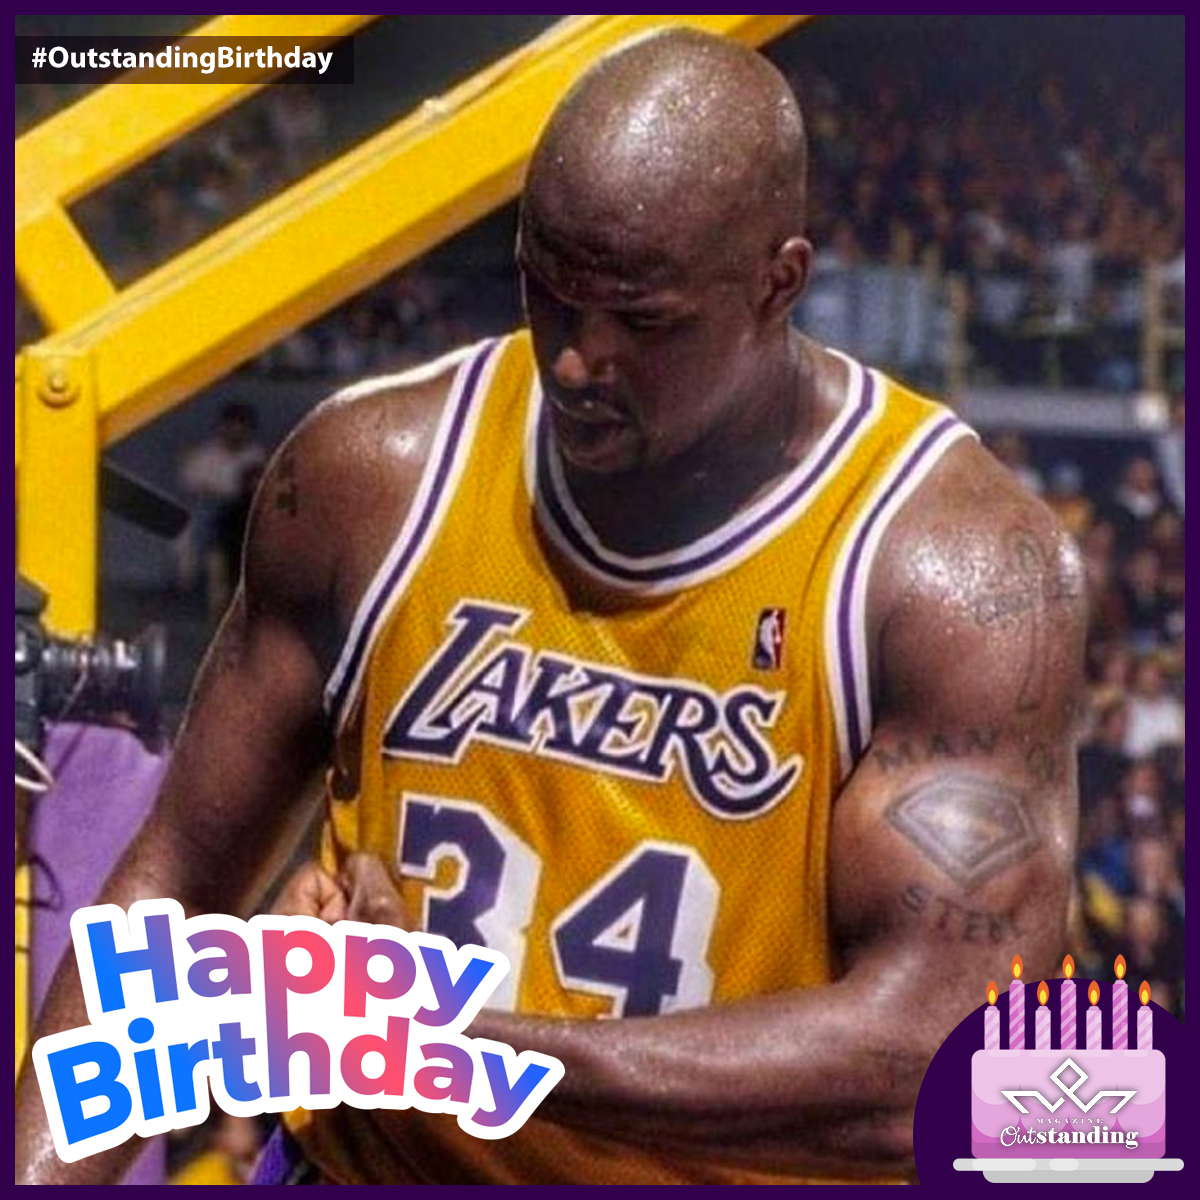 🥳¡Muchas felicidades al exjugador estadounidense de baloncesto, Shaquille O'Neal! 🏀
Hoy es su cumpleaños (6 de marzo).

#OutstandingBirthday #ShaquilleONeal #Lakers